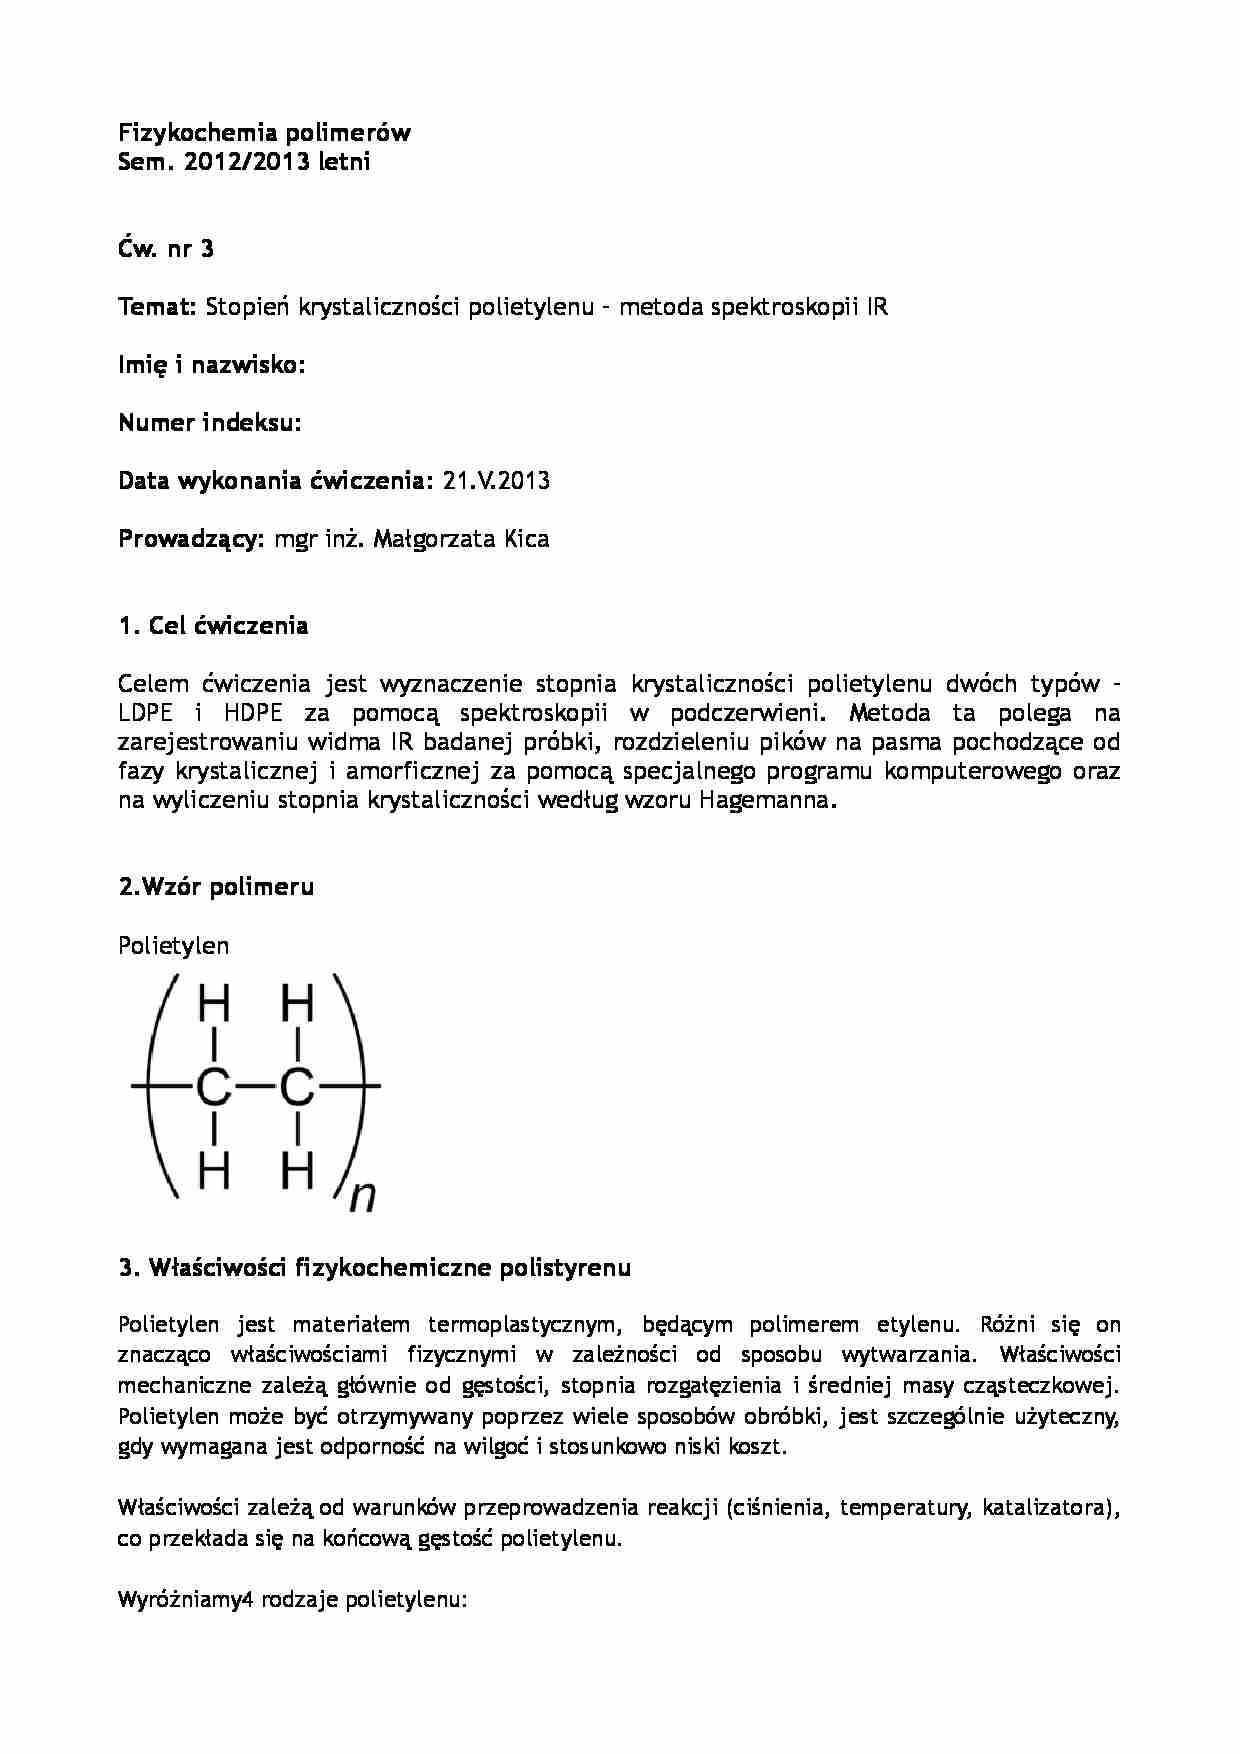 Stopień krystaliczności polietylenu, metoda spektroskopii - opracowanie - strona 1